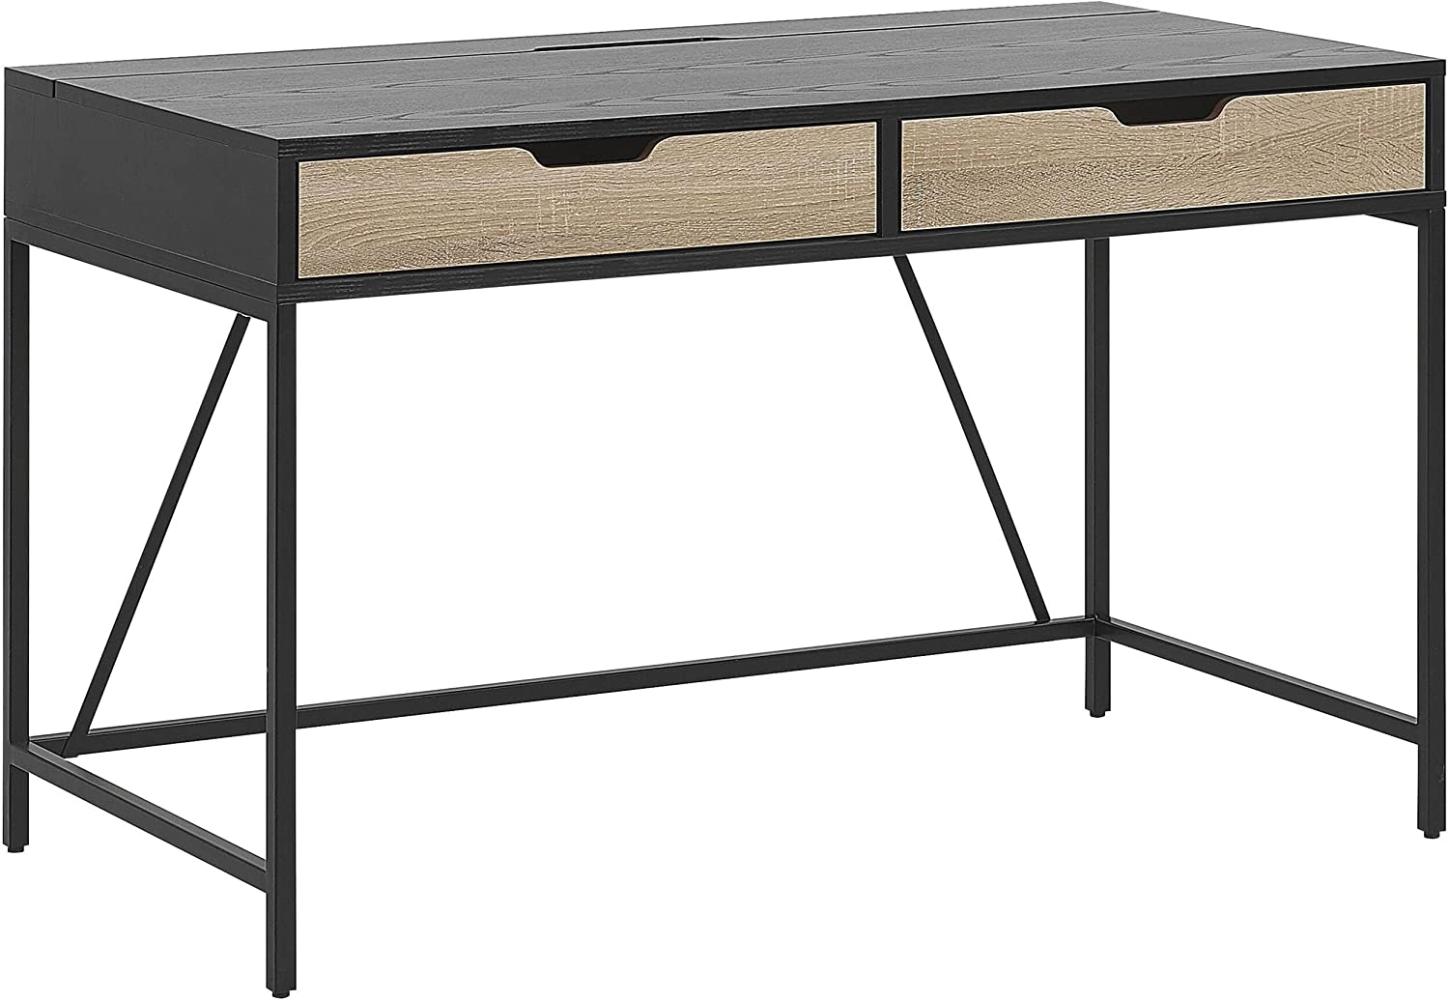 Schreibtisch schwarz / heller Holzfarbton 120 x 60 cm 2 Schubladen JENA Bild 1